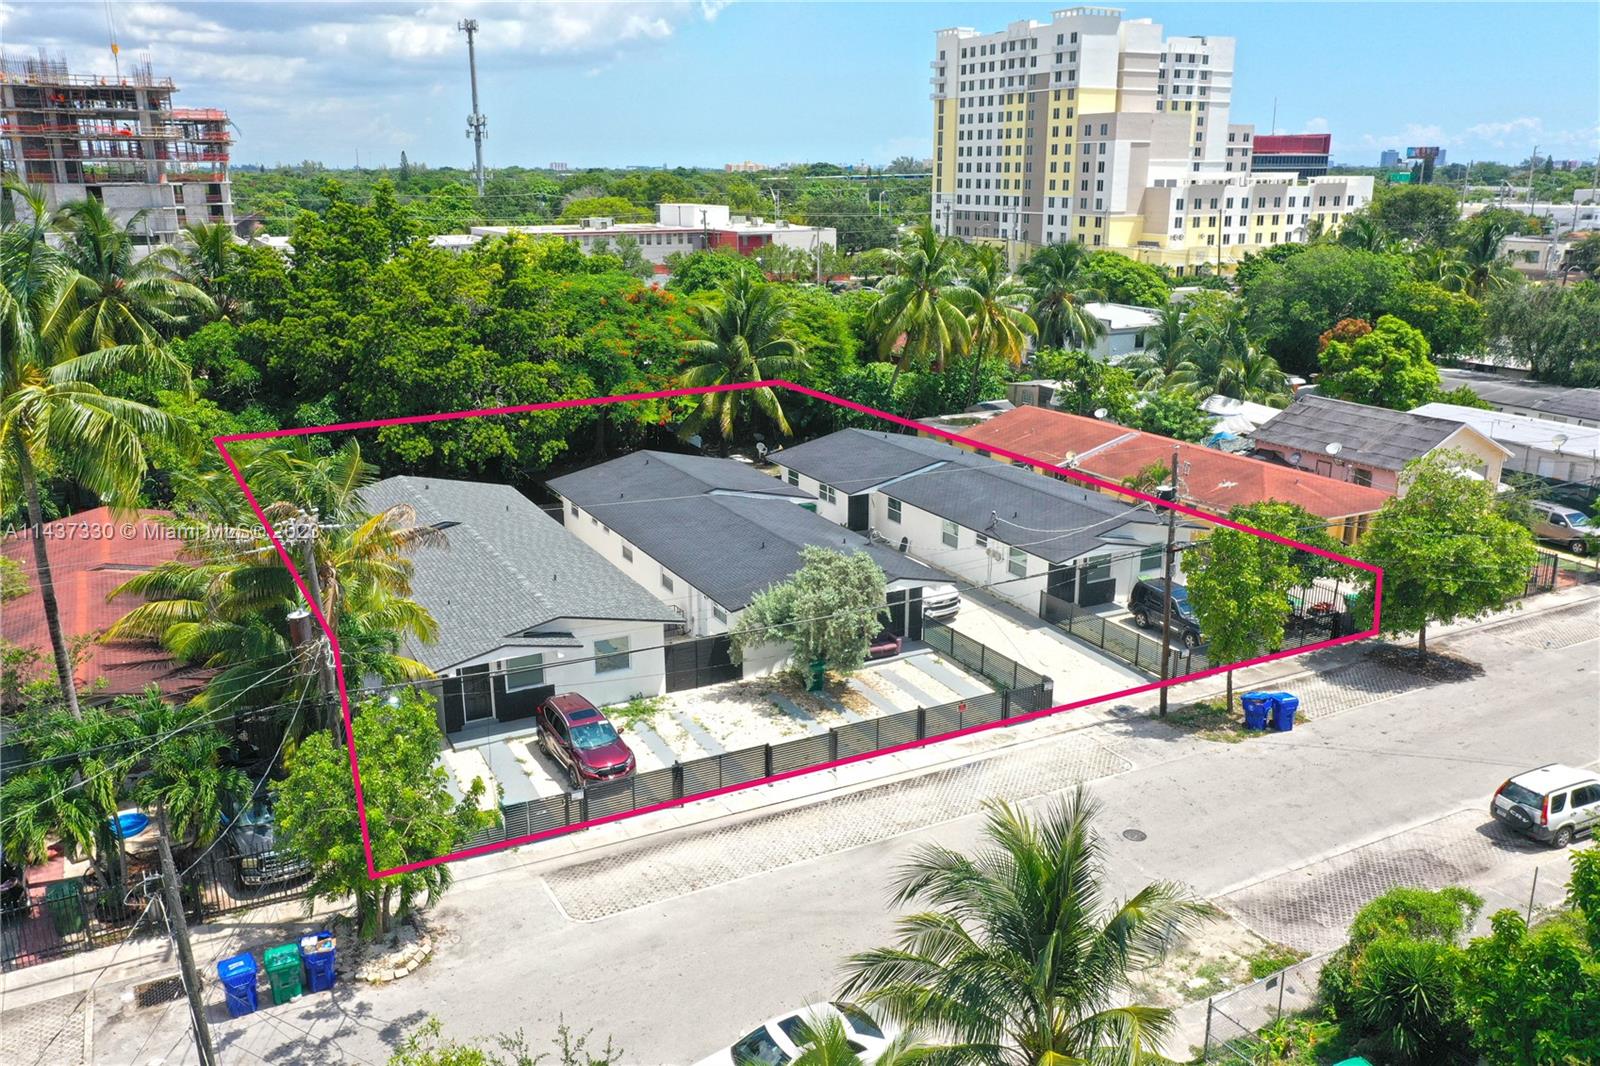 Rental Property at 1441 Nw 34th St St, Miami, Broward County, Florida -  - $2,800,000 MO.